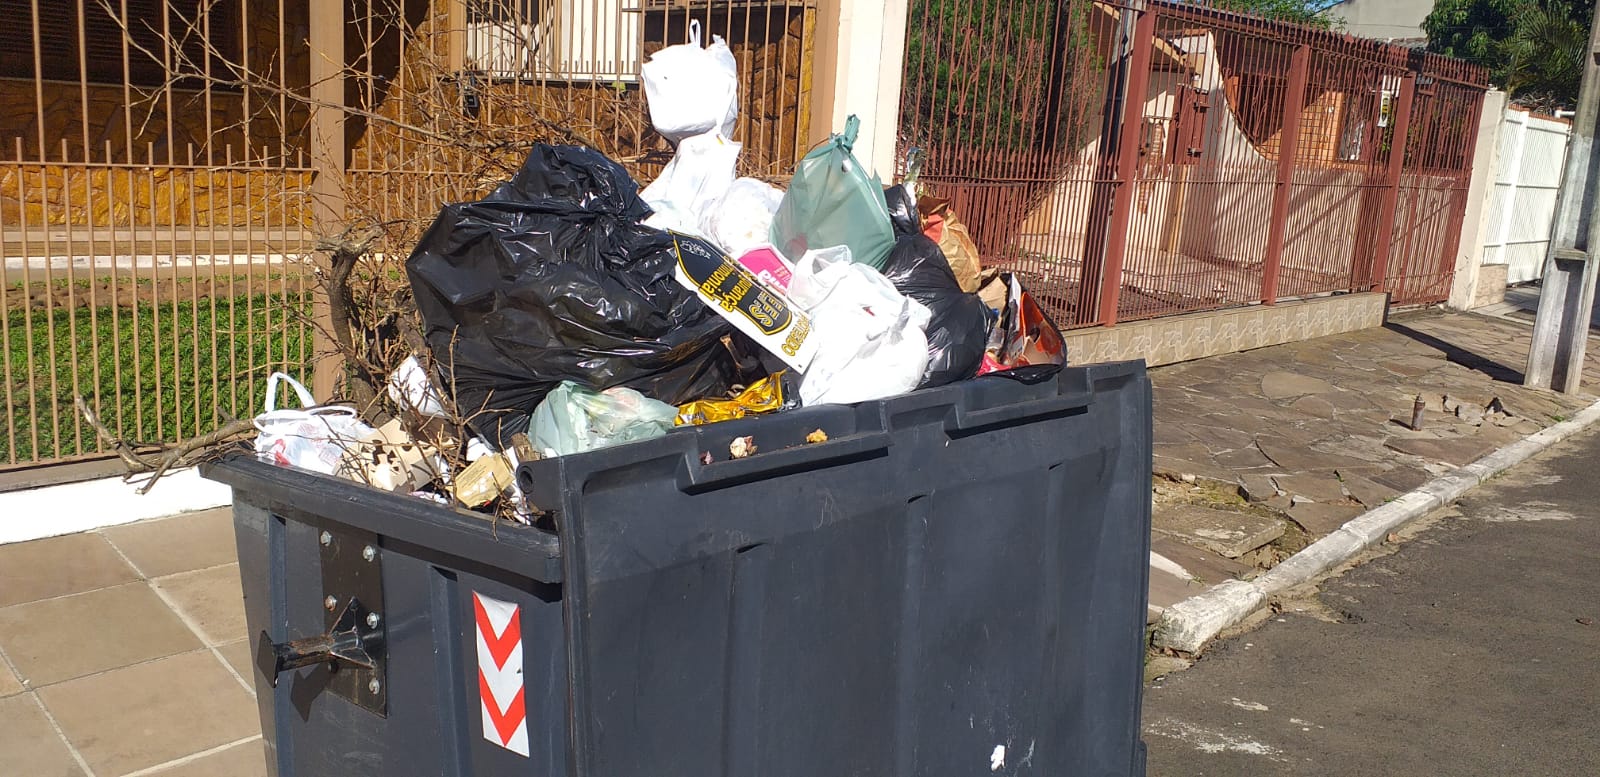 Após desistências, quarta empresa é chamada para resolver o problema do lixo em Cachoeirinha